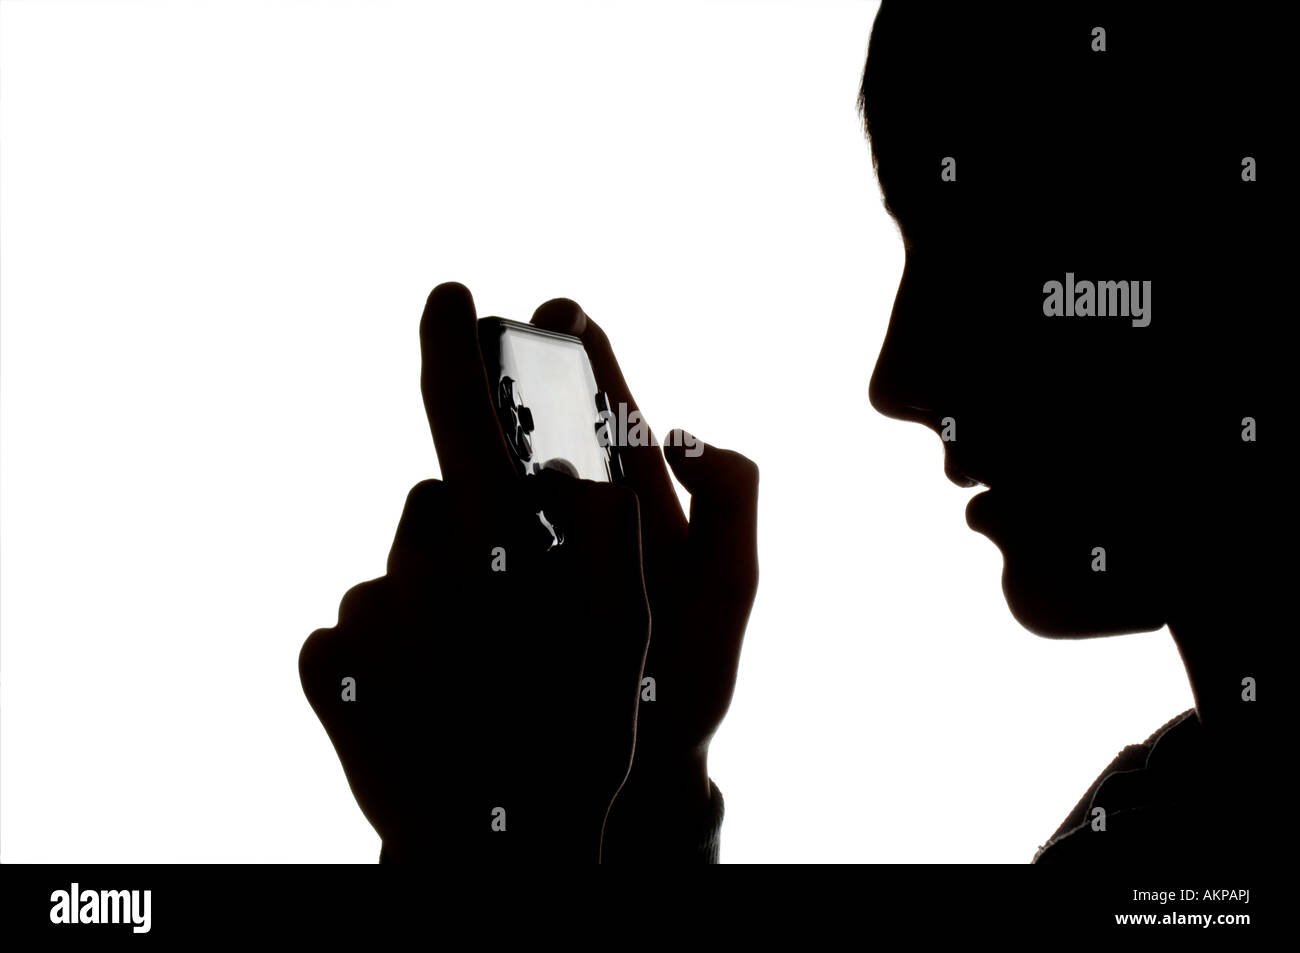 Une silhouette d'un jeune adolescent jouant sur une console de jeu portable Sony PSP. Photo de Jim Holden. Banque D'Images